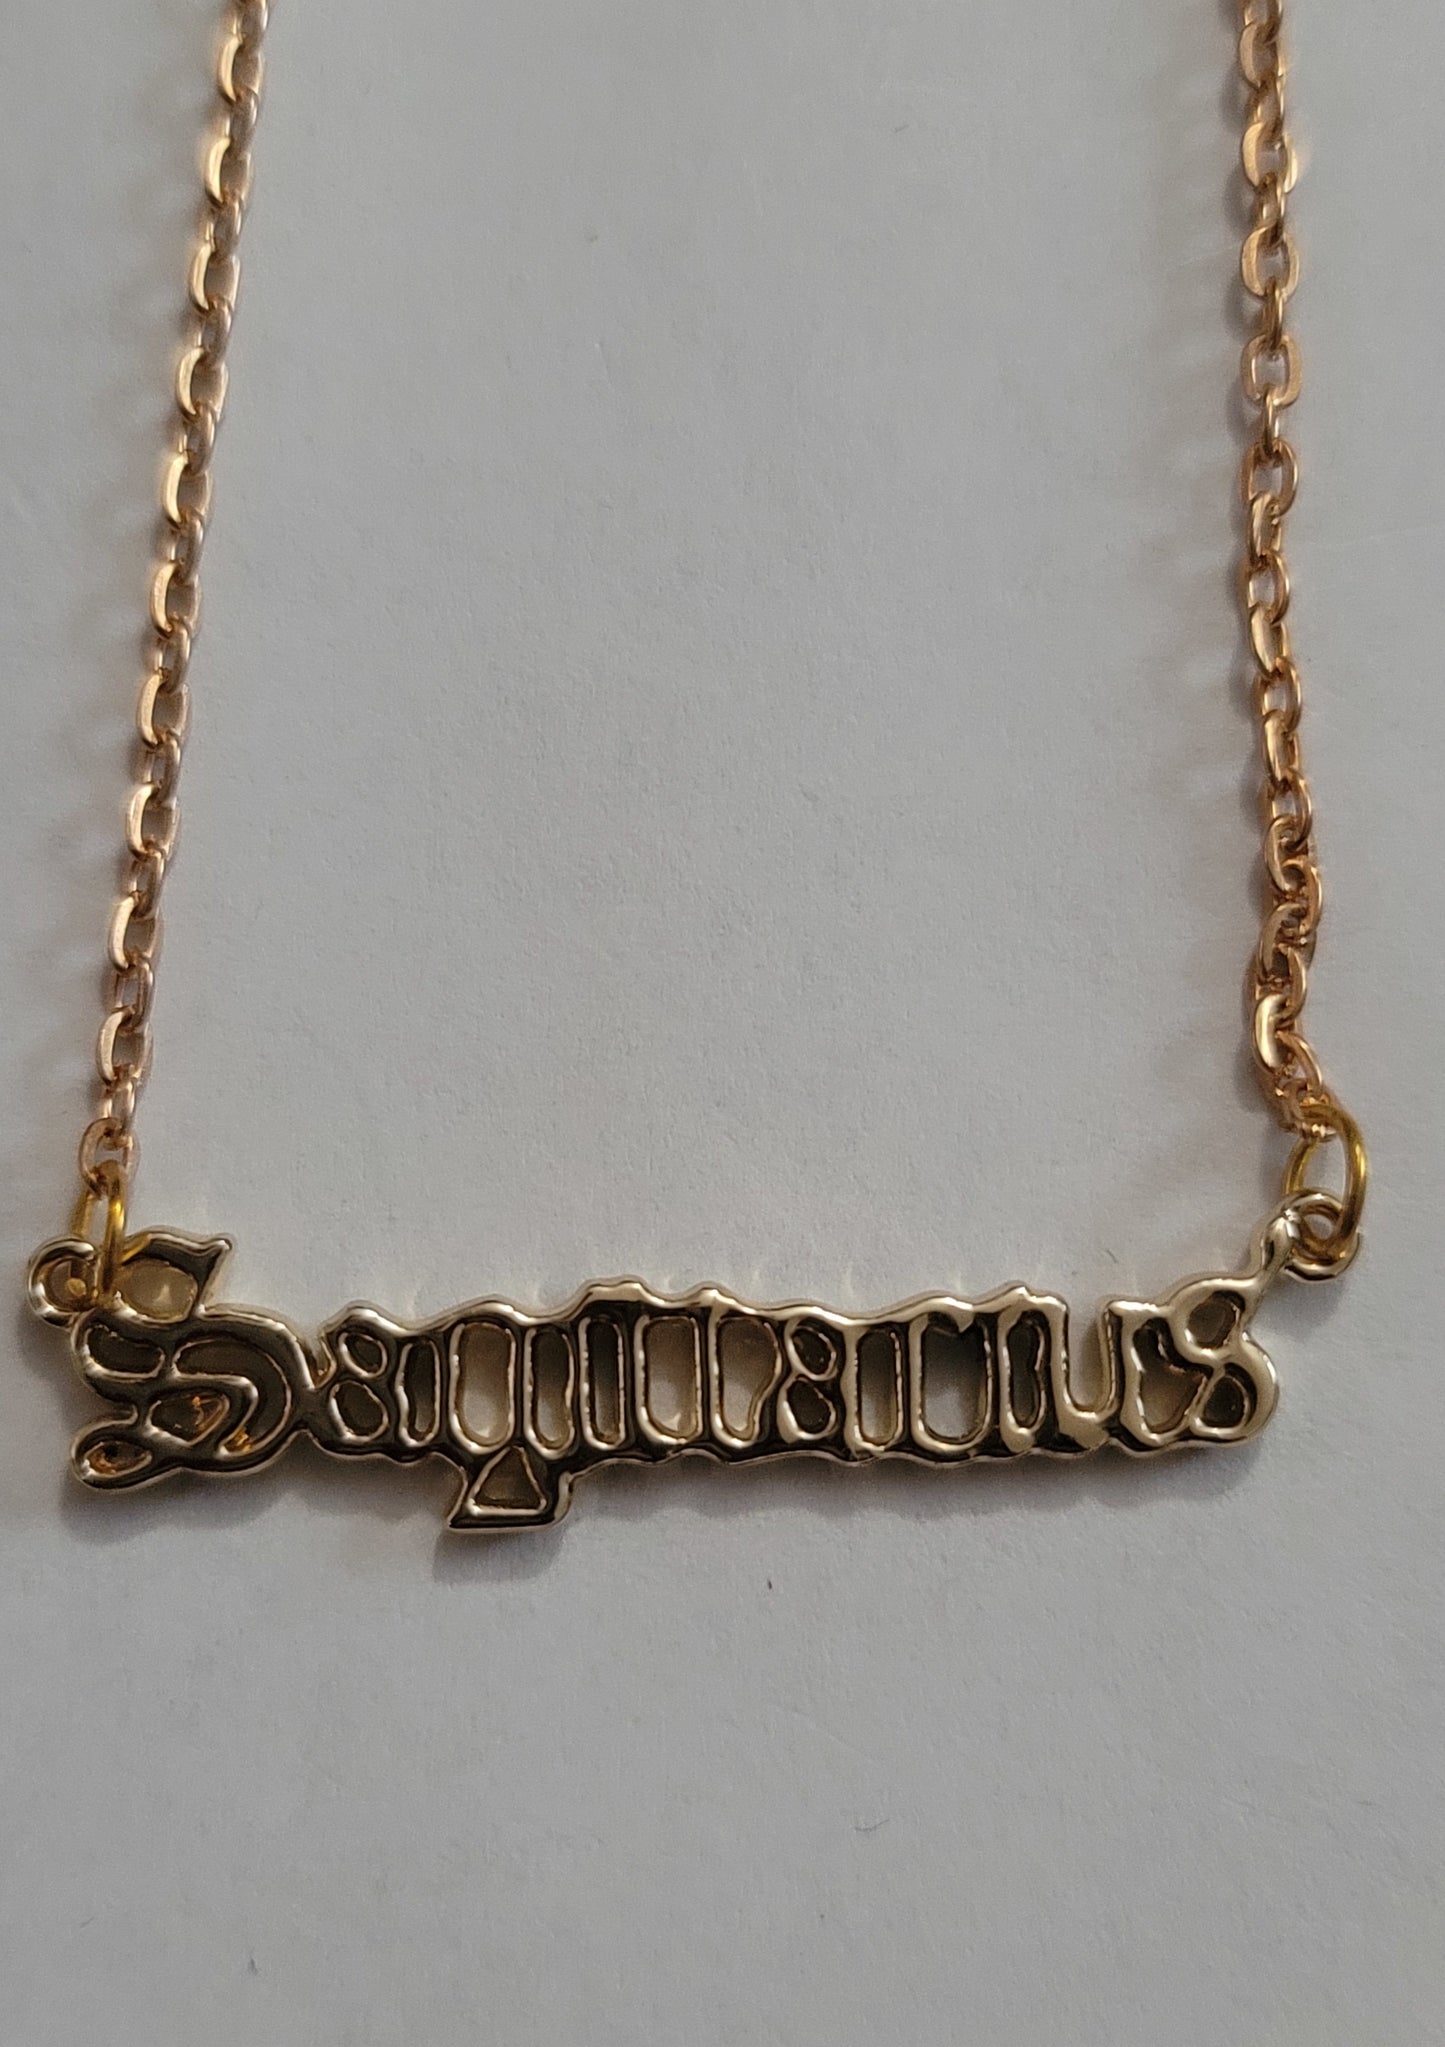 Gold Sagittarius Pendant Necklace